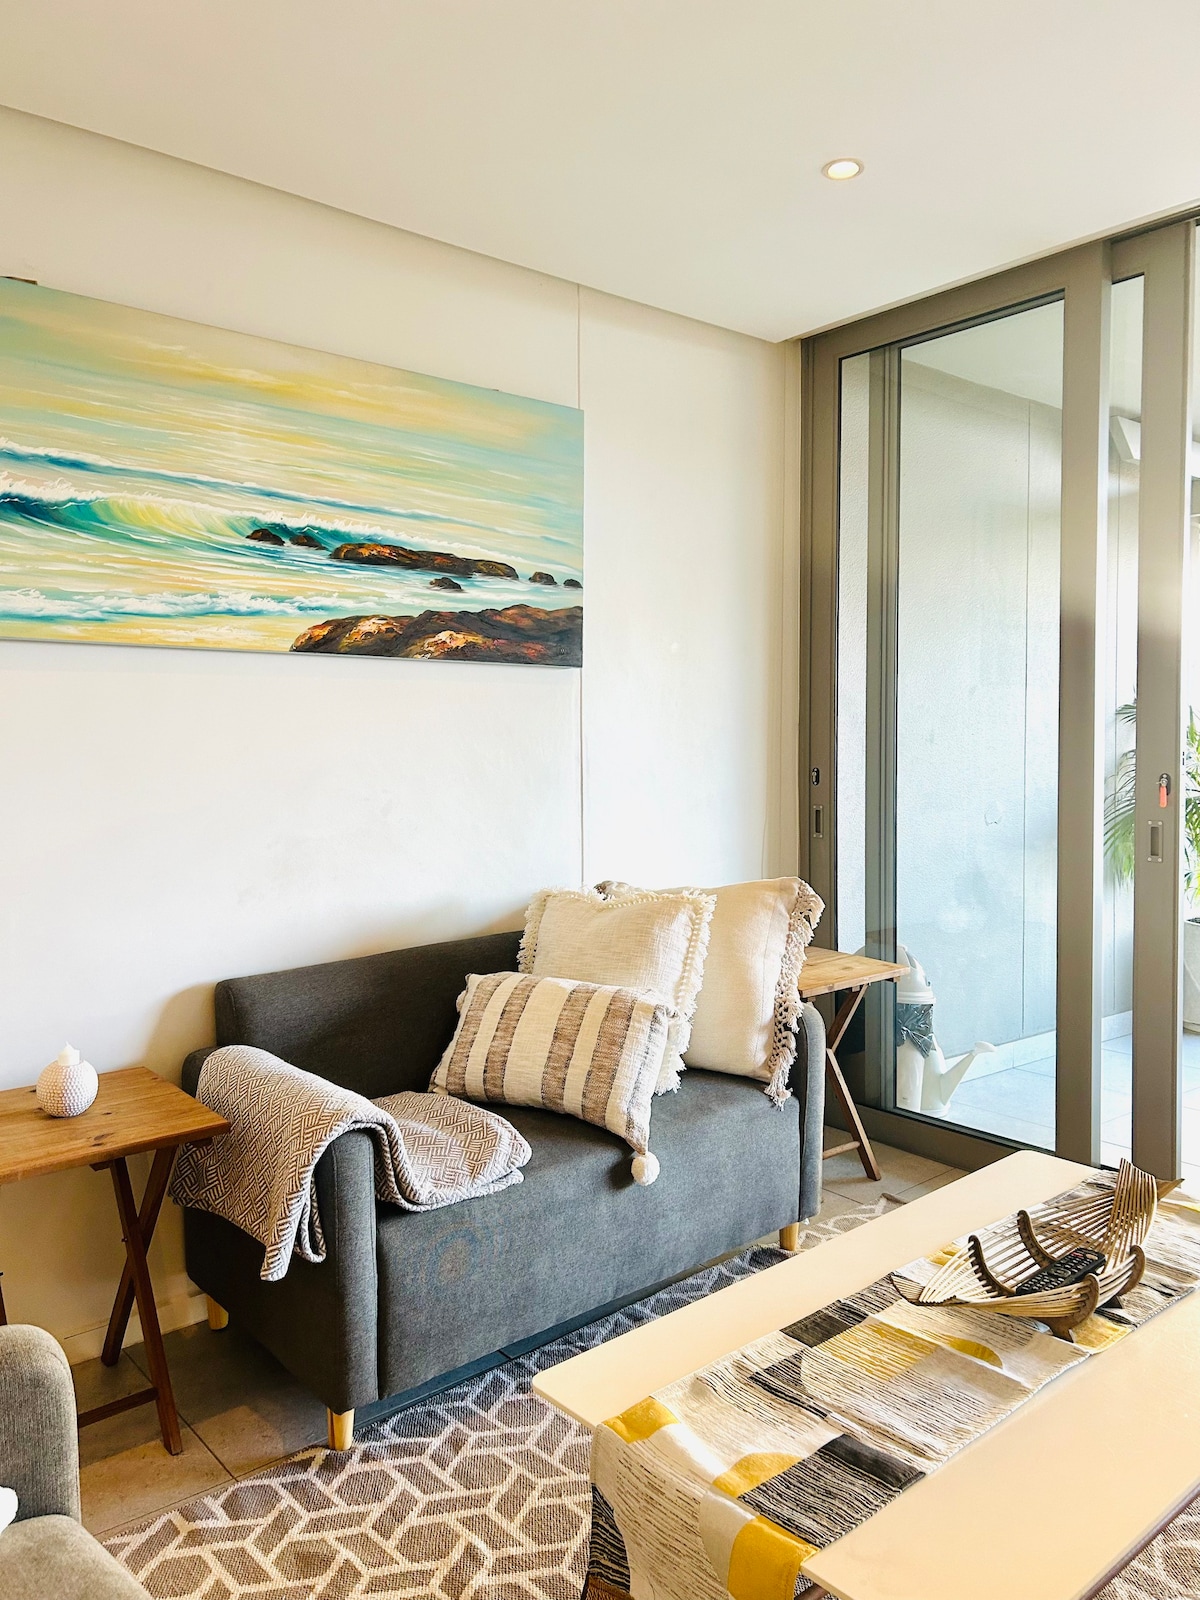 Nyne9Apartments presents a cosy getaway apartment